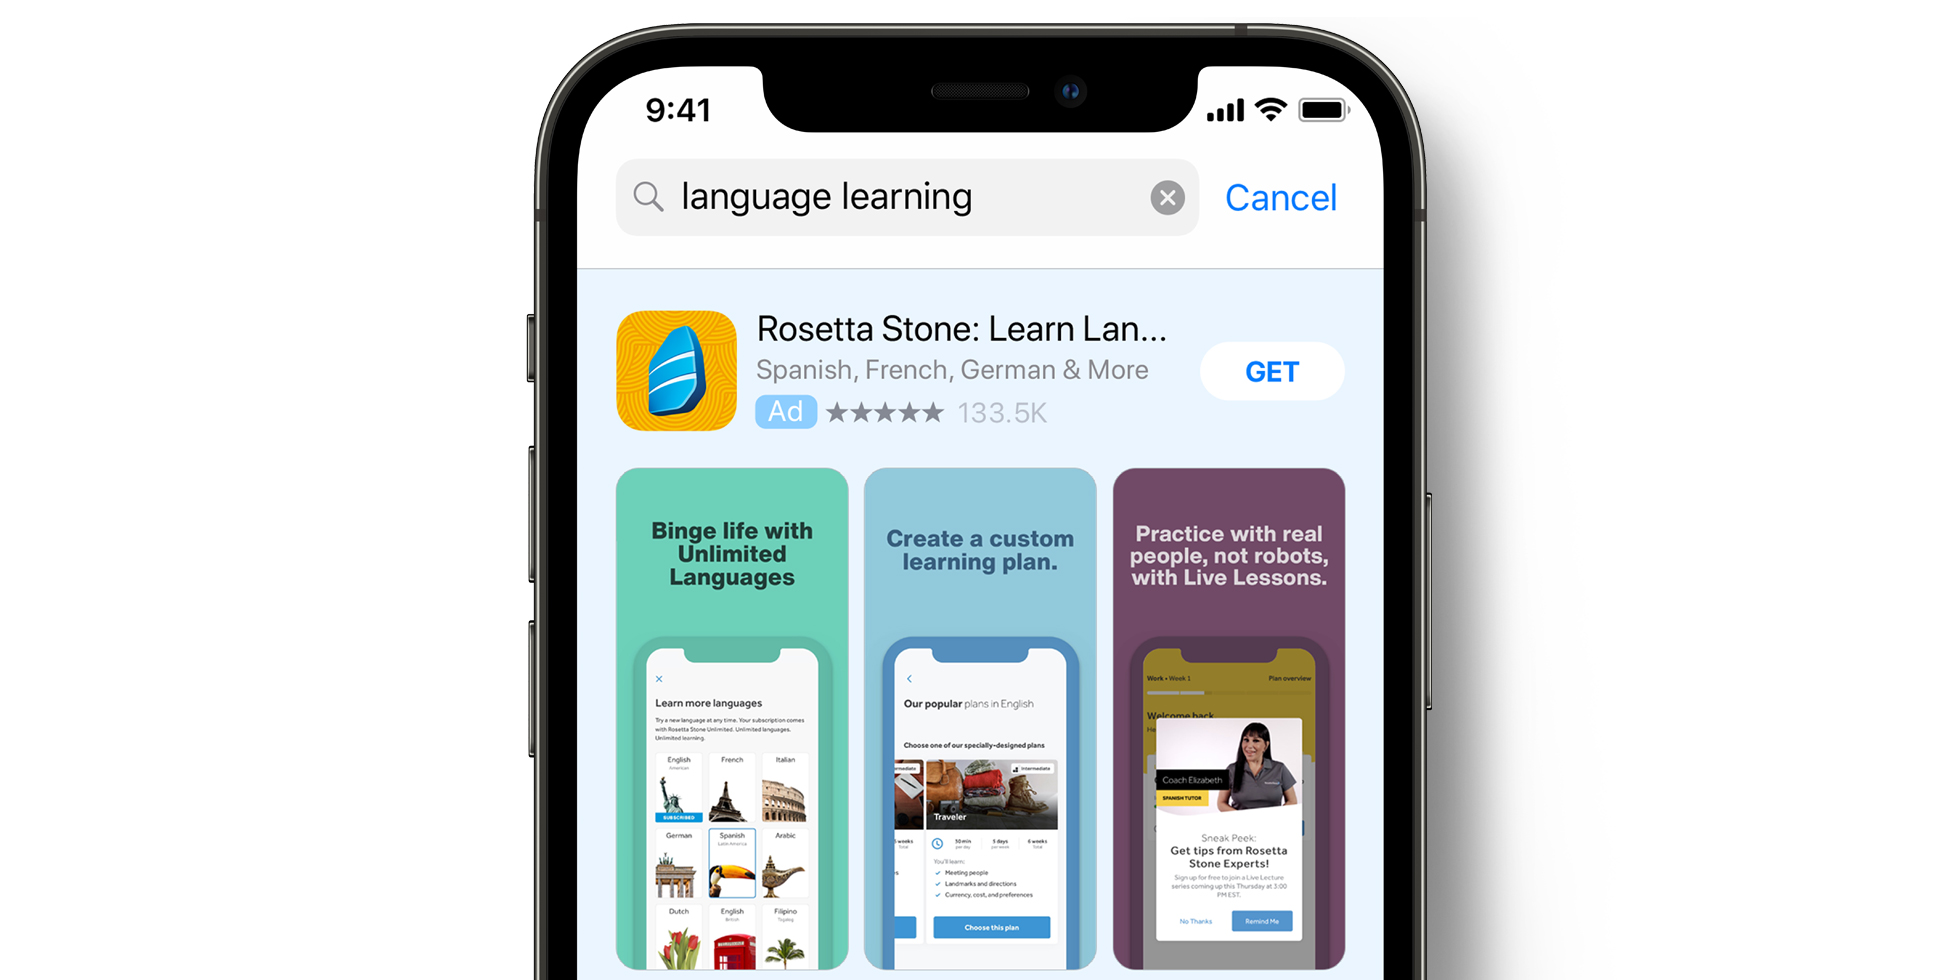 App Store 上的 Rosetta Stone 广告